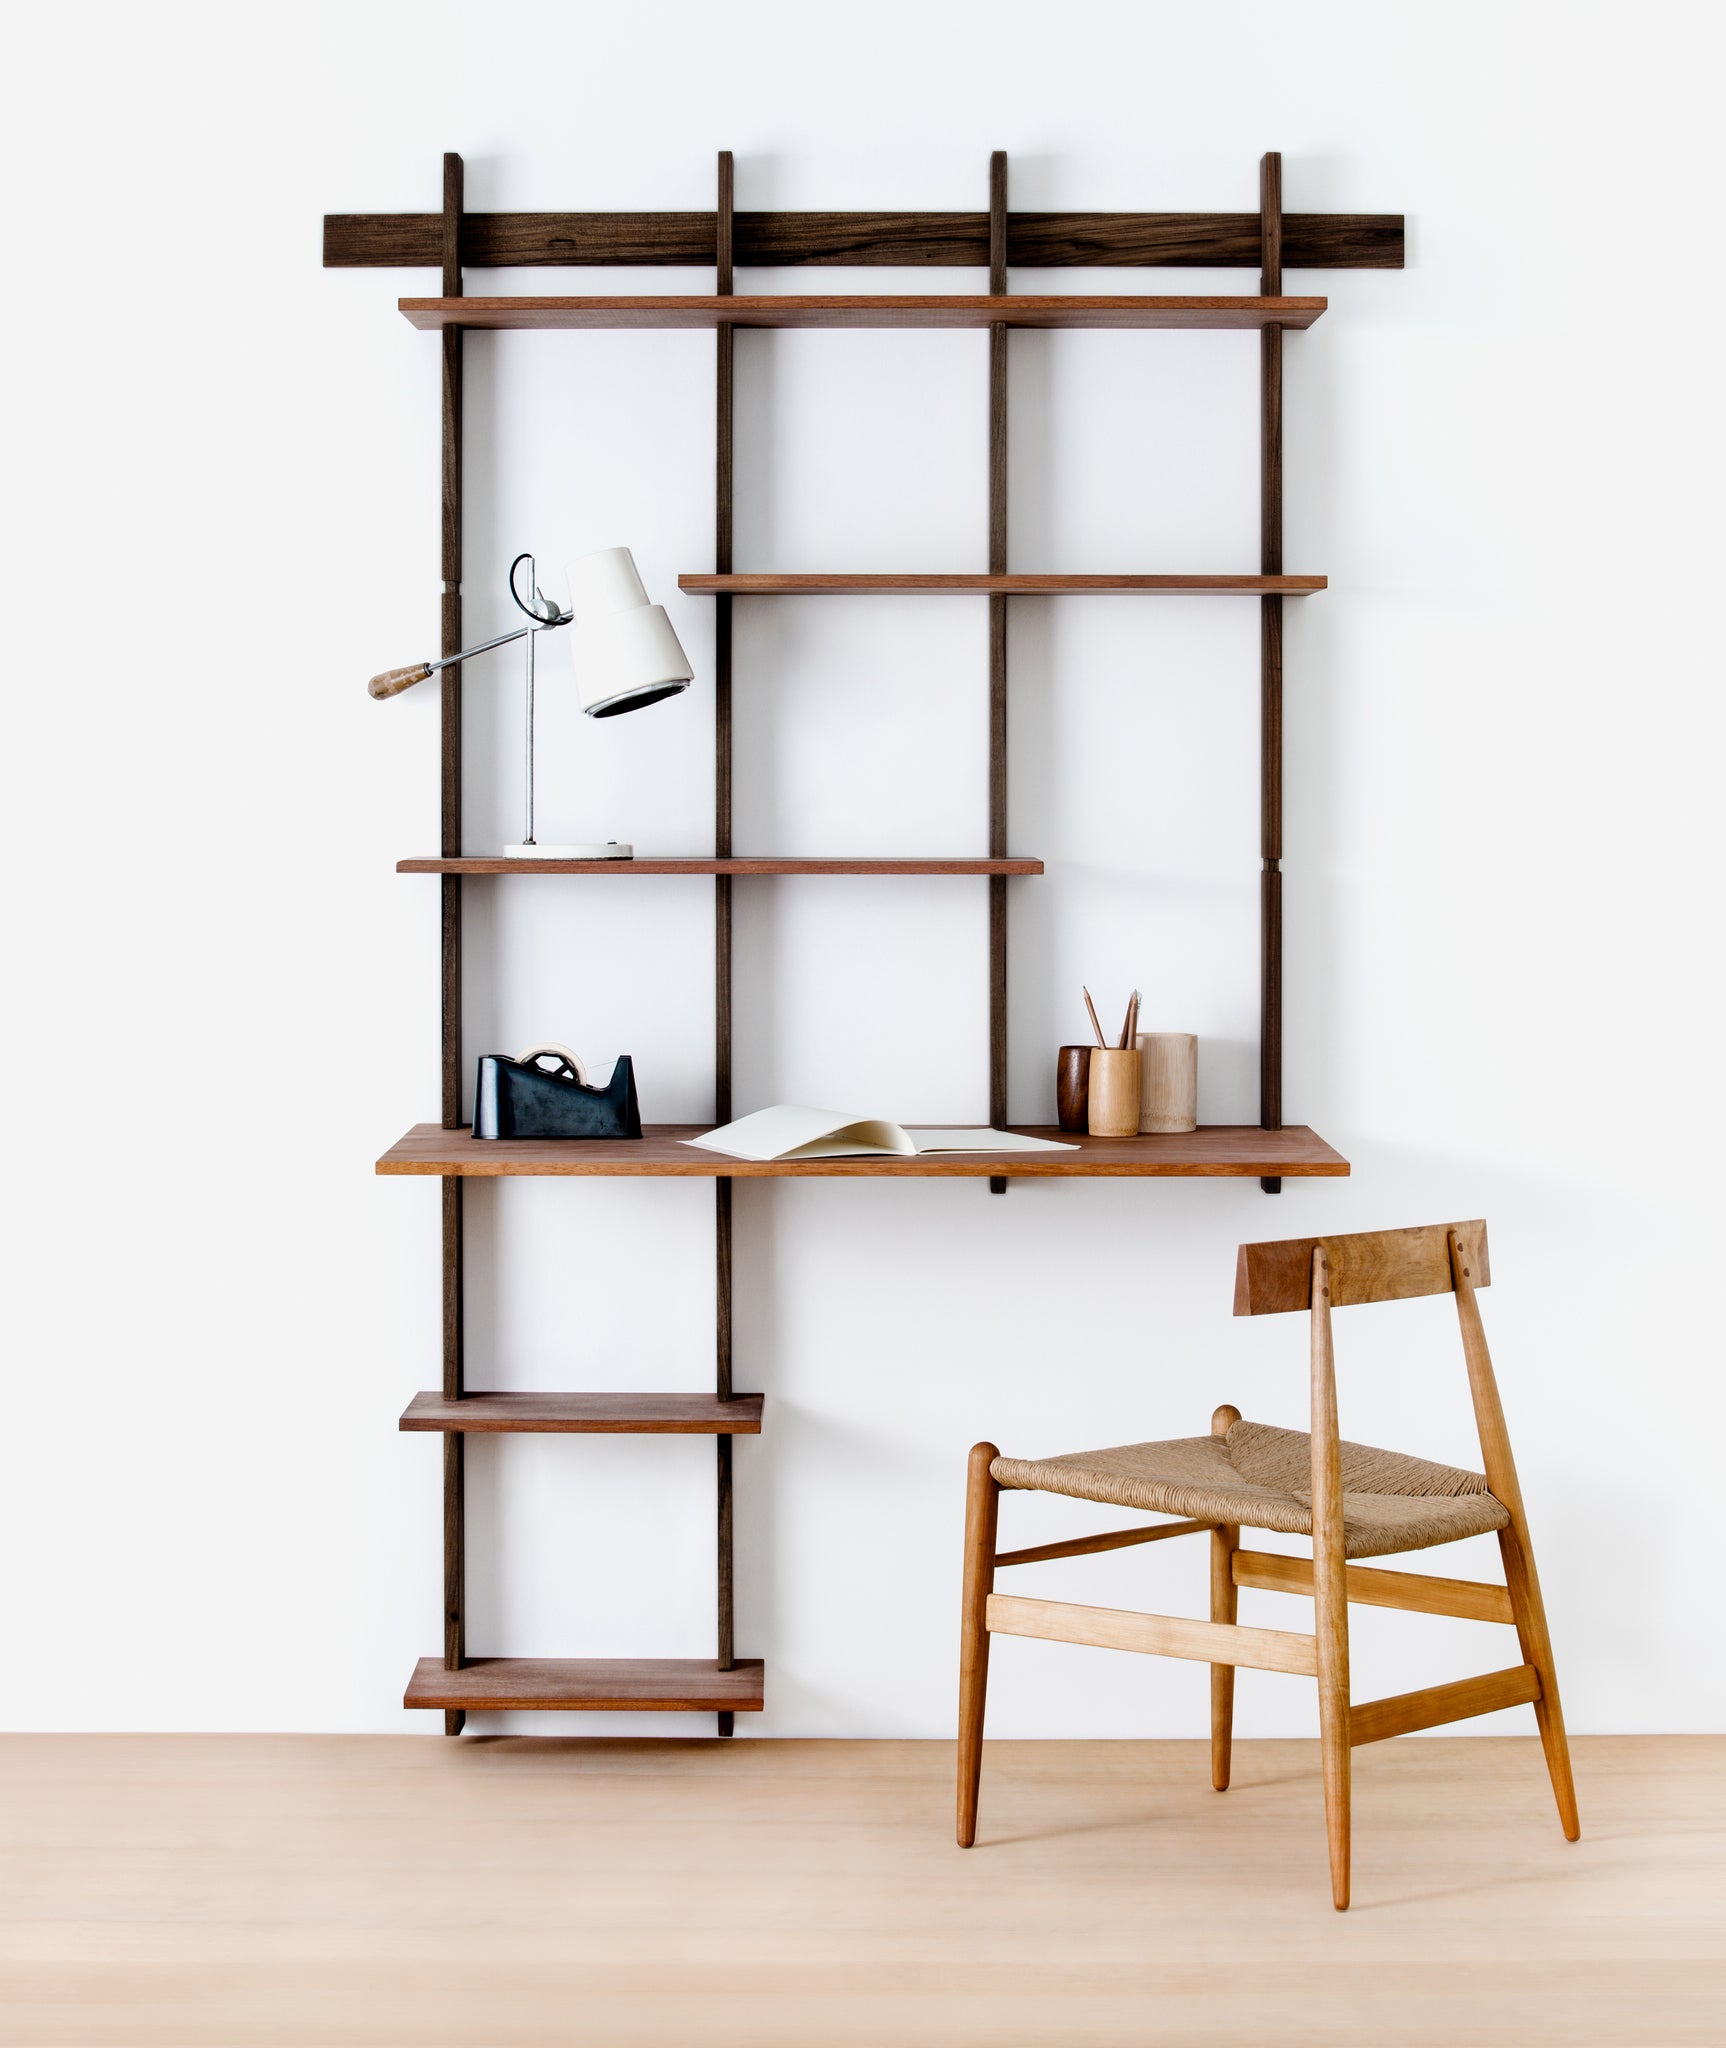 Sticotti Bookshelf + Desk Kit G - BEAM